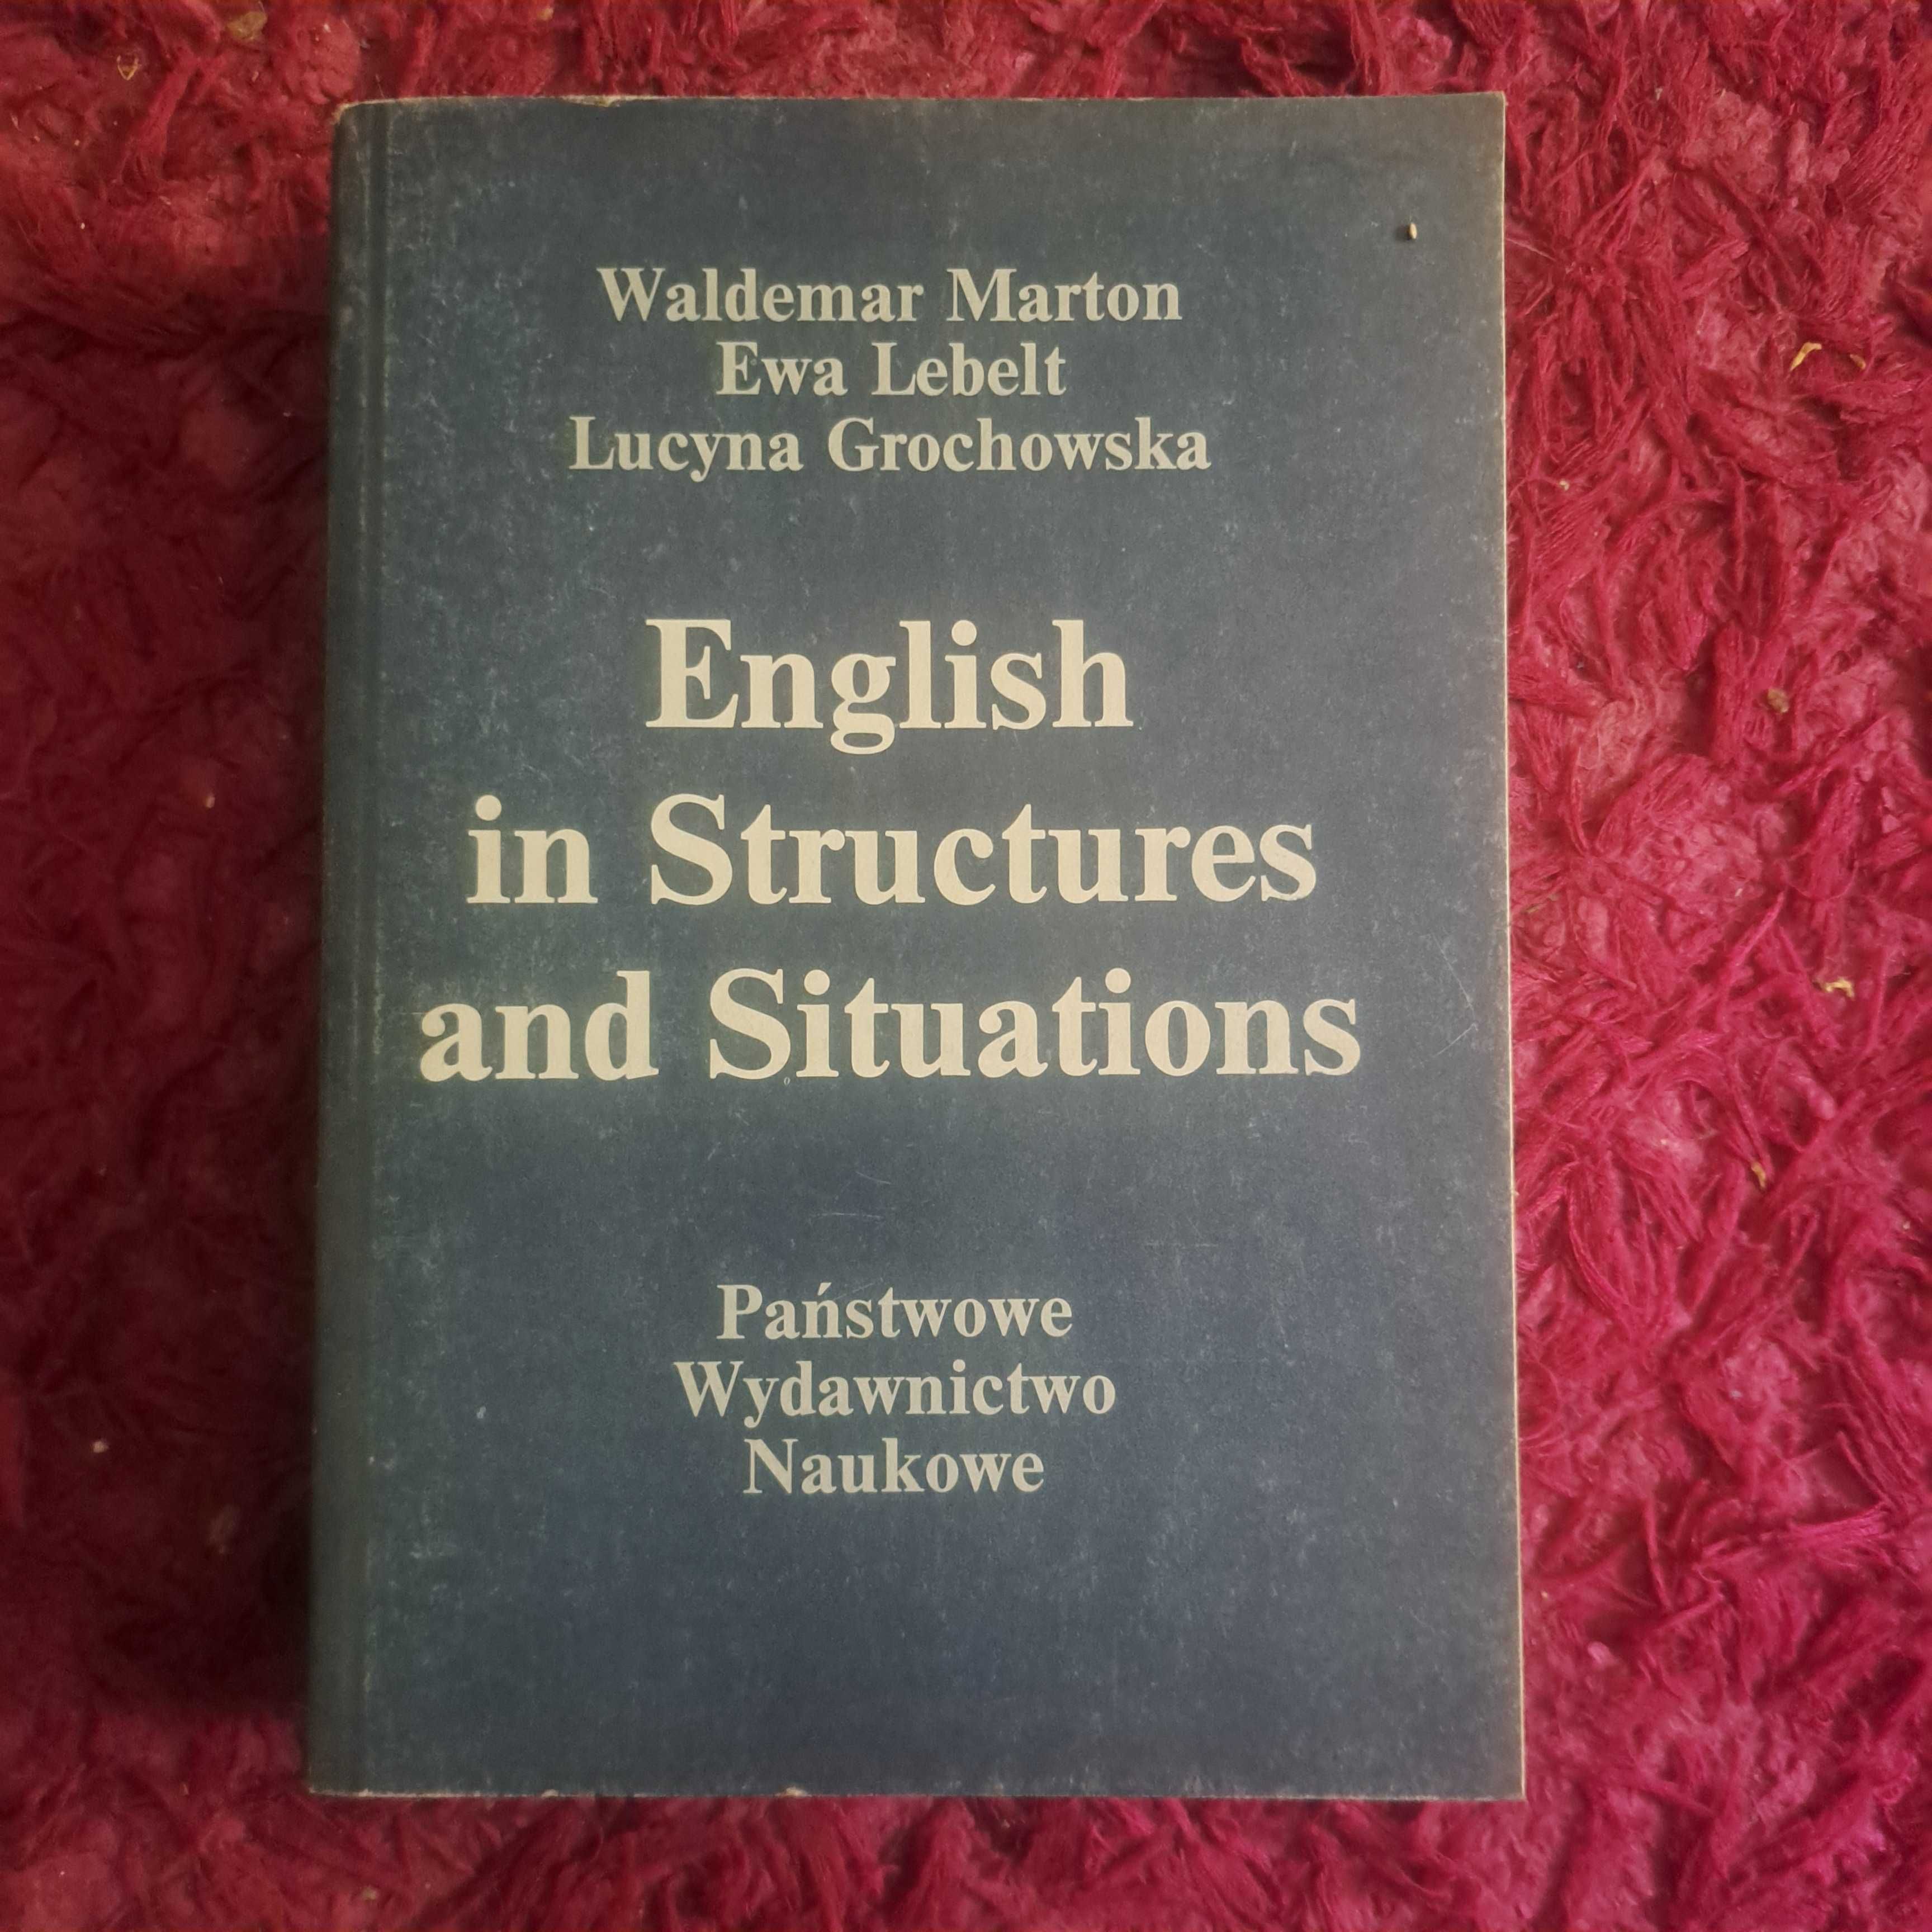 "English in Structures and Situations” – Przewodnik po Angielszczyźnie